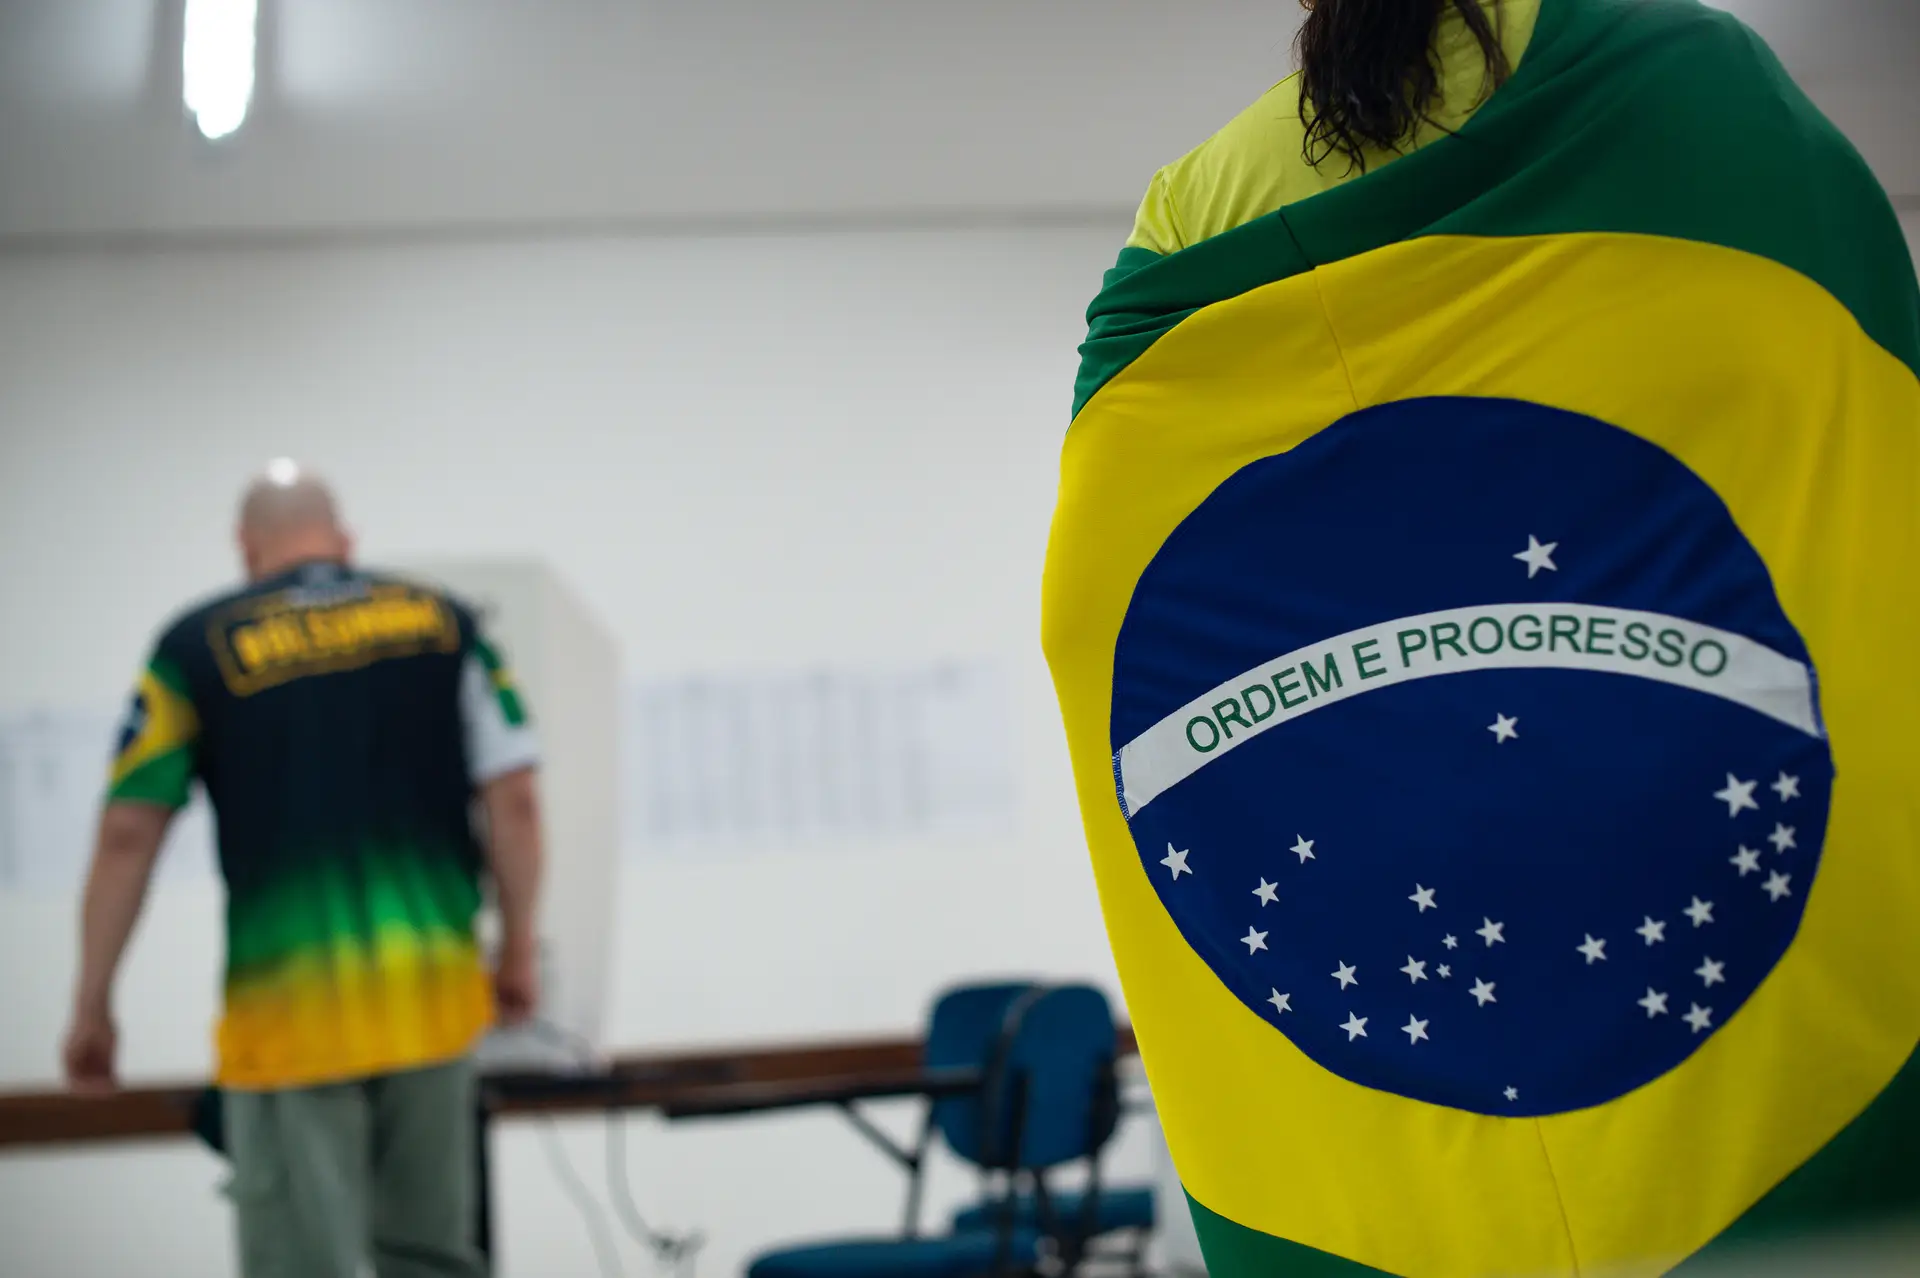 Analfabetismo, canibalismo, aborto e diabo marcam campanha no Brasil